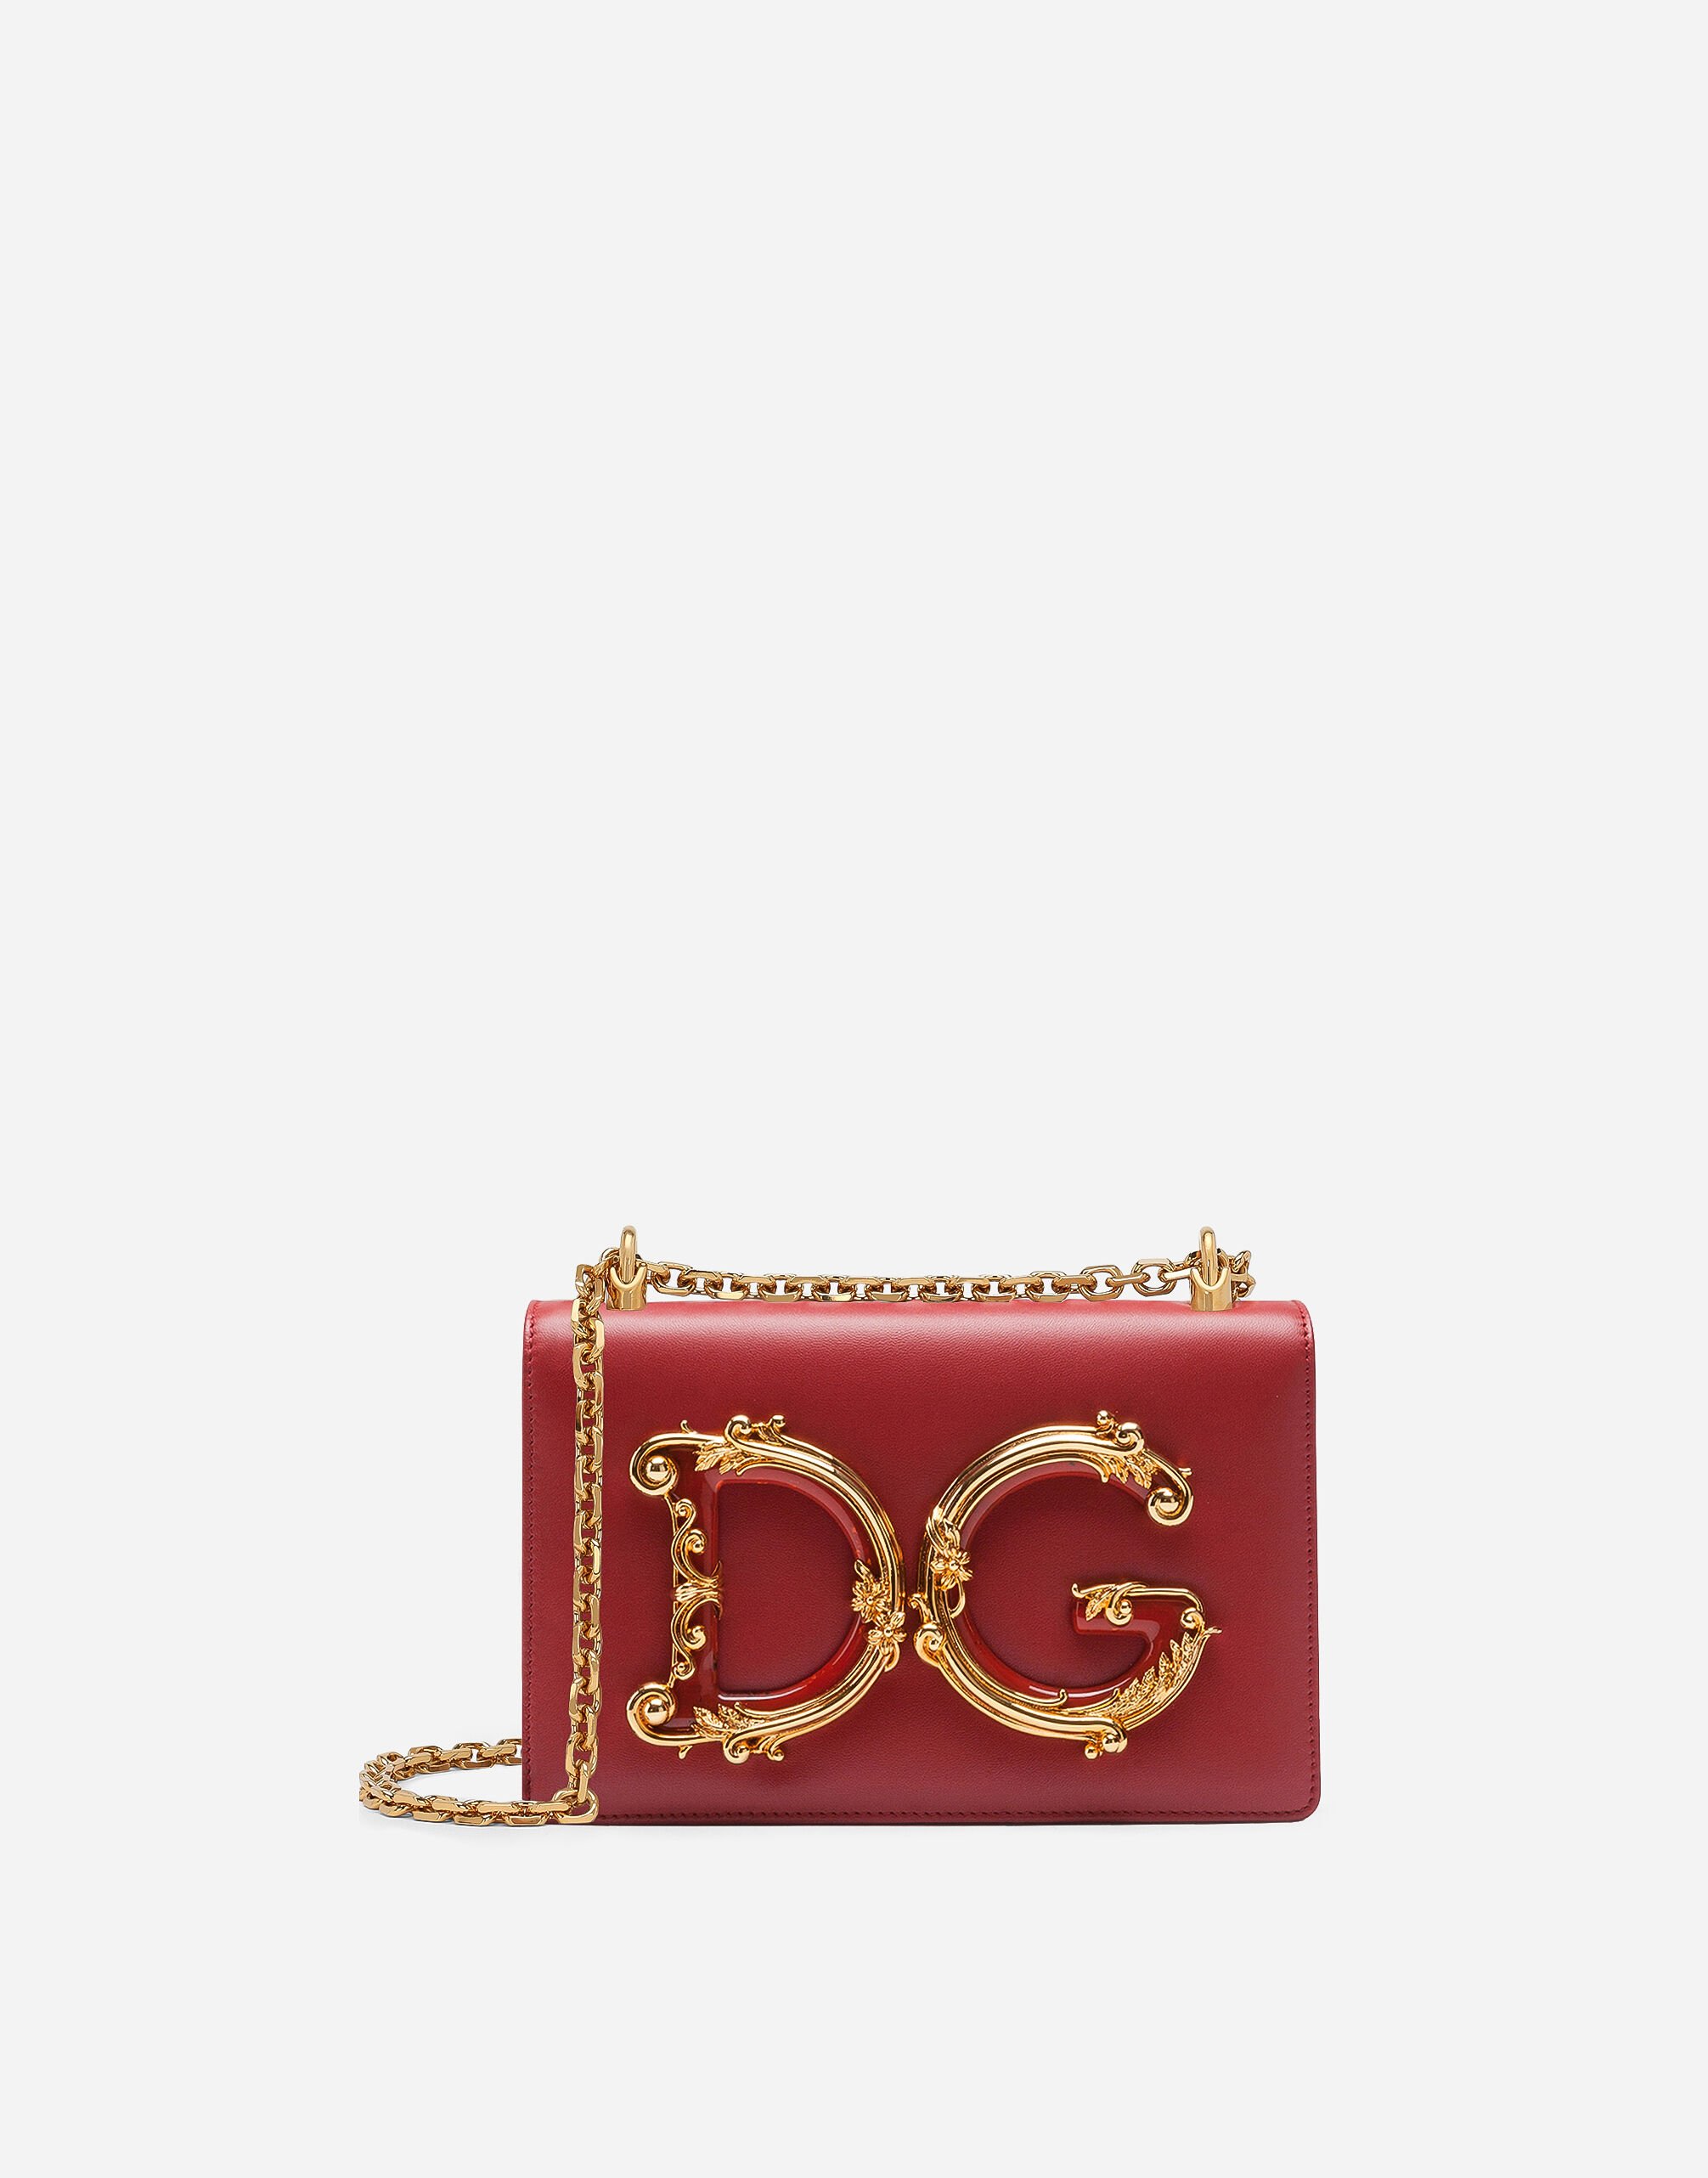 Dolce & Gabbana Tasche DG Girls aus nappaleder Rot BB6498AQ963